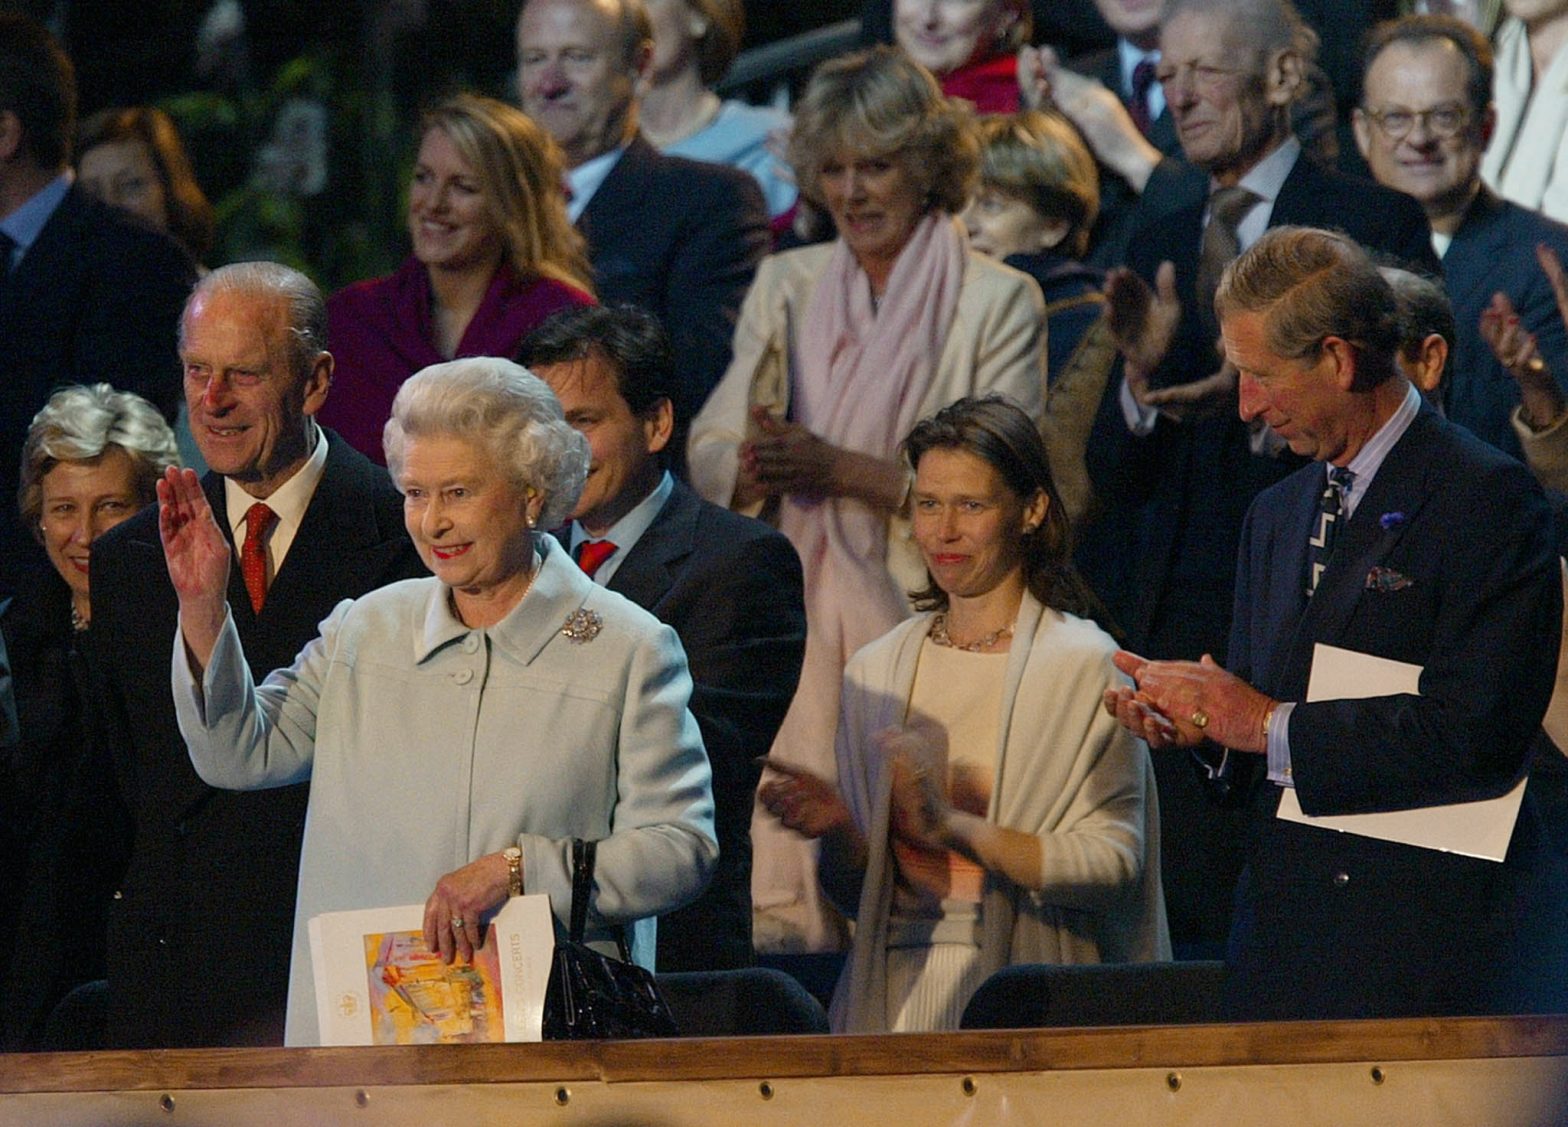 Queen Elizabeth II, UK’s Longest-Serving Monarch, Dies at 96